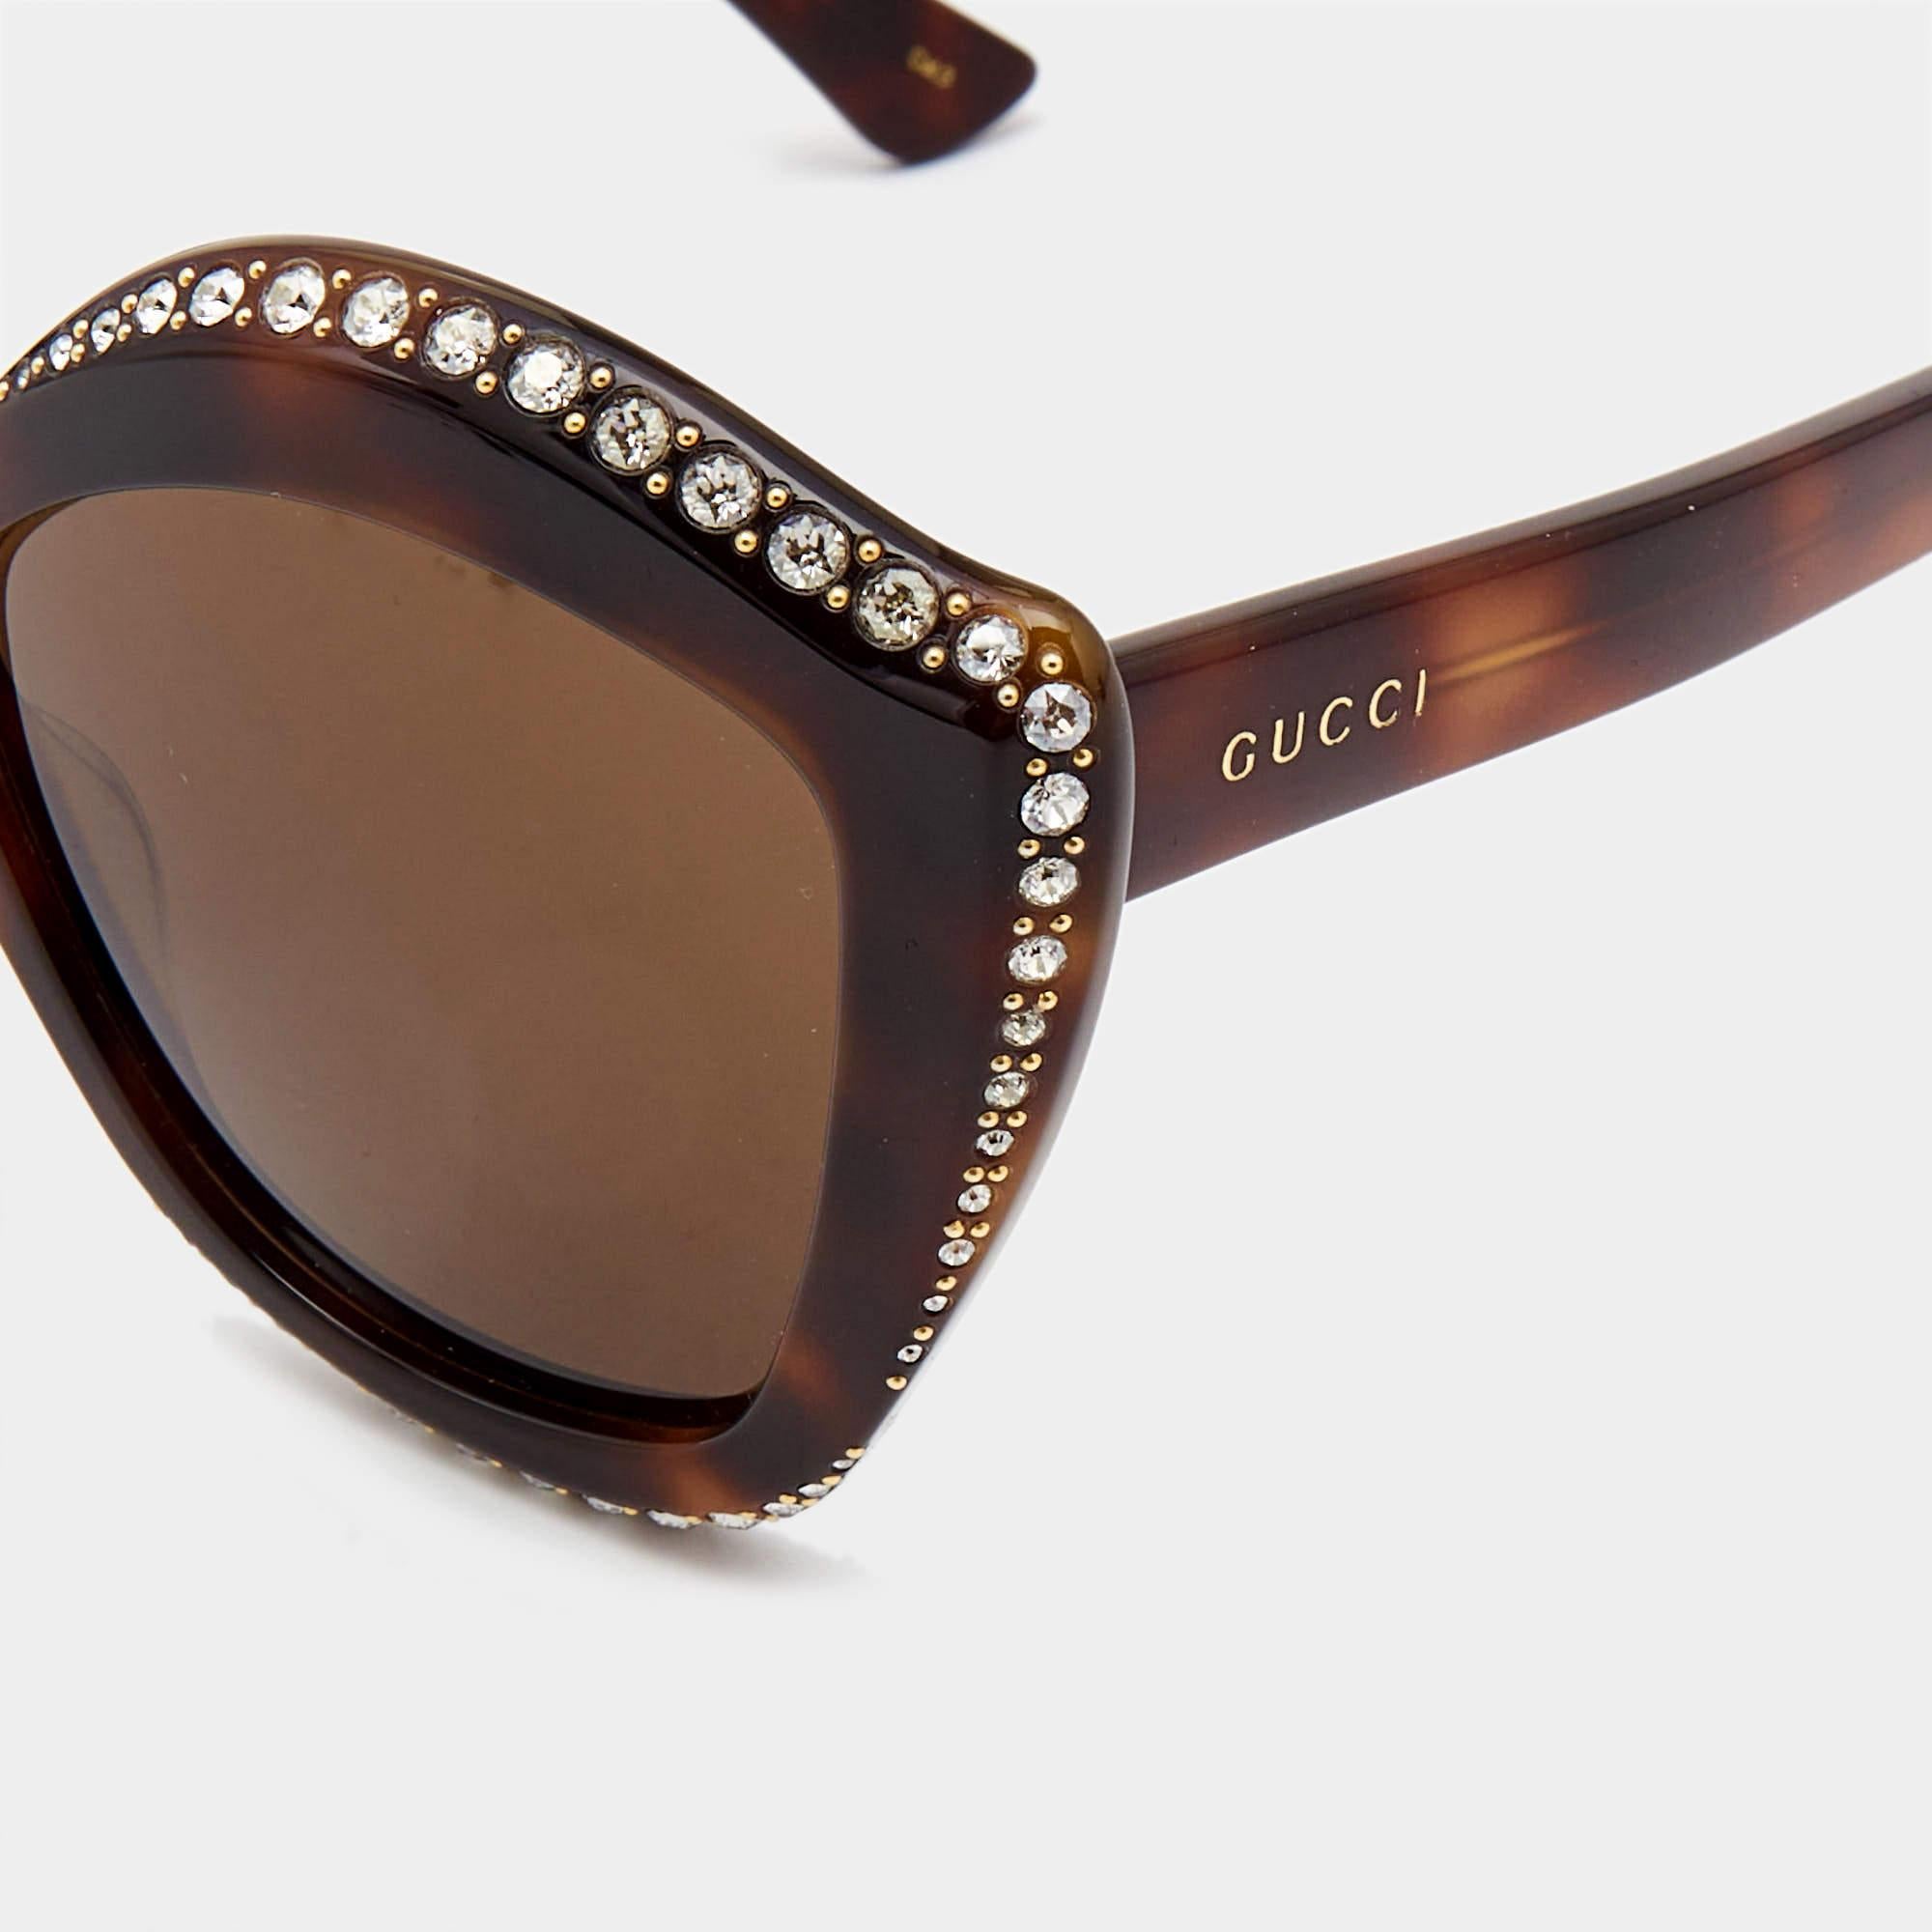 Nous voyons les détails sur cette exquise paire de lunettes de soleil de créateur fabriquée à partir de matériaux nobles. Les lunettes de soleil sont à la fois luxueuses et pratiques.

Comprend
Pochette originale